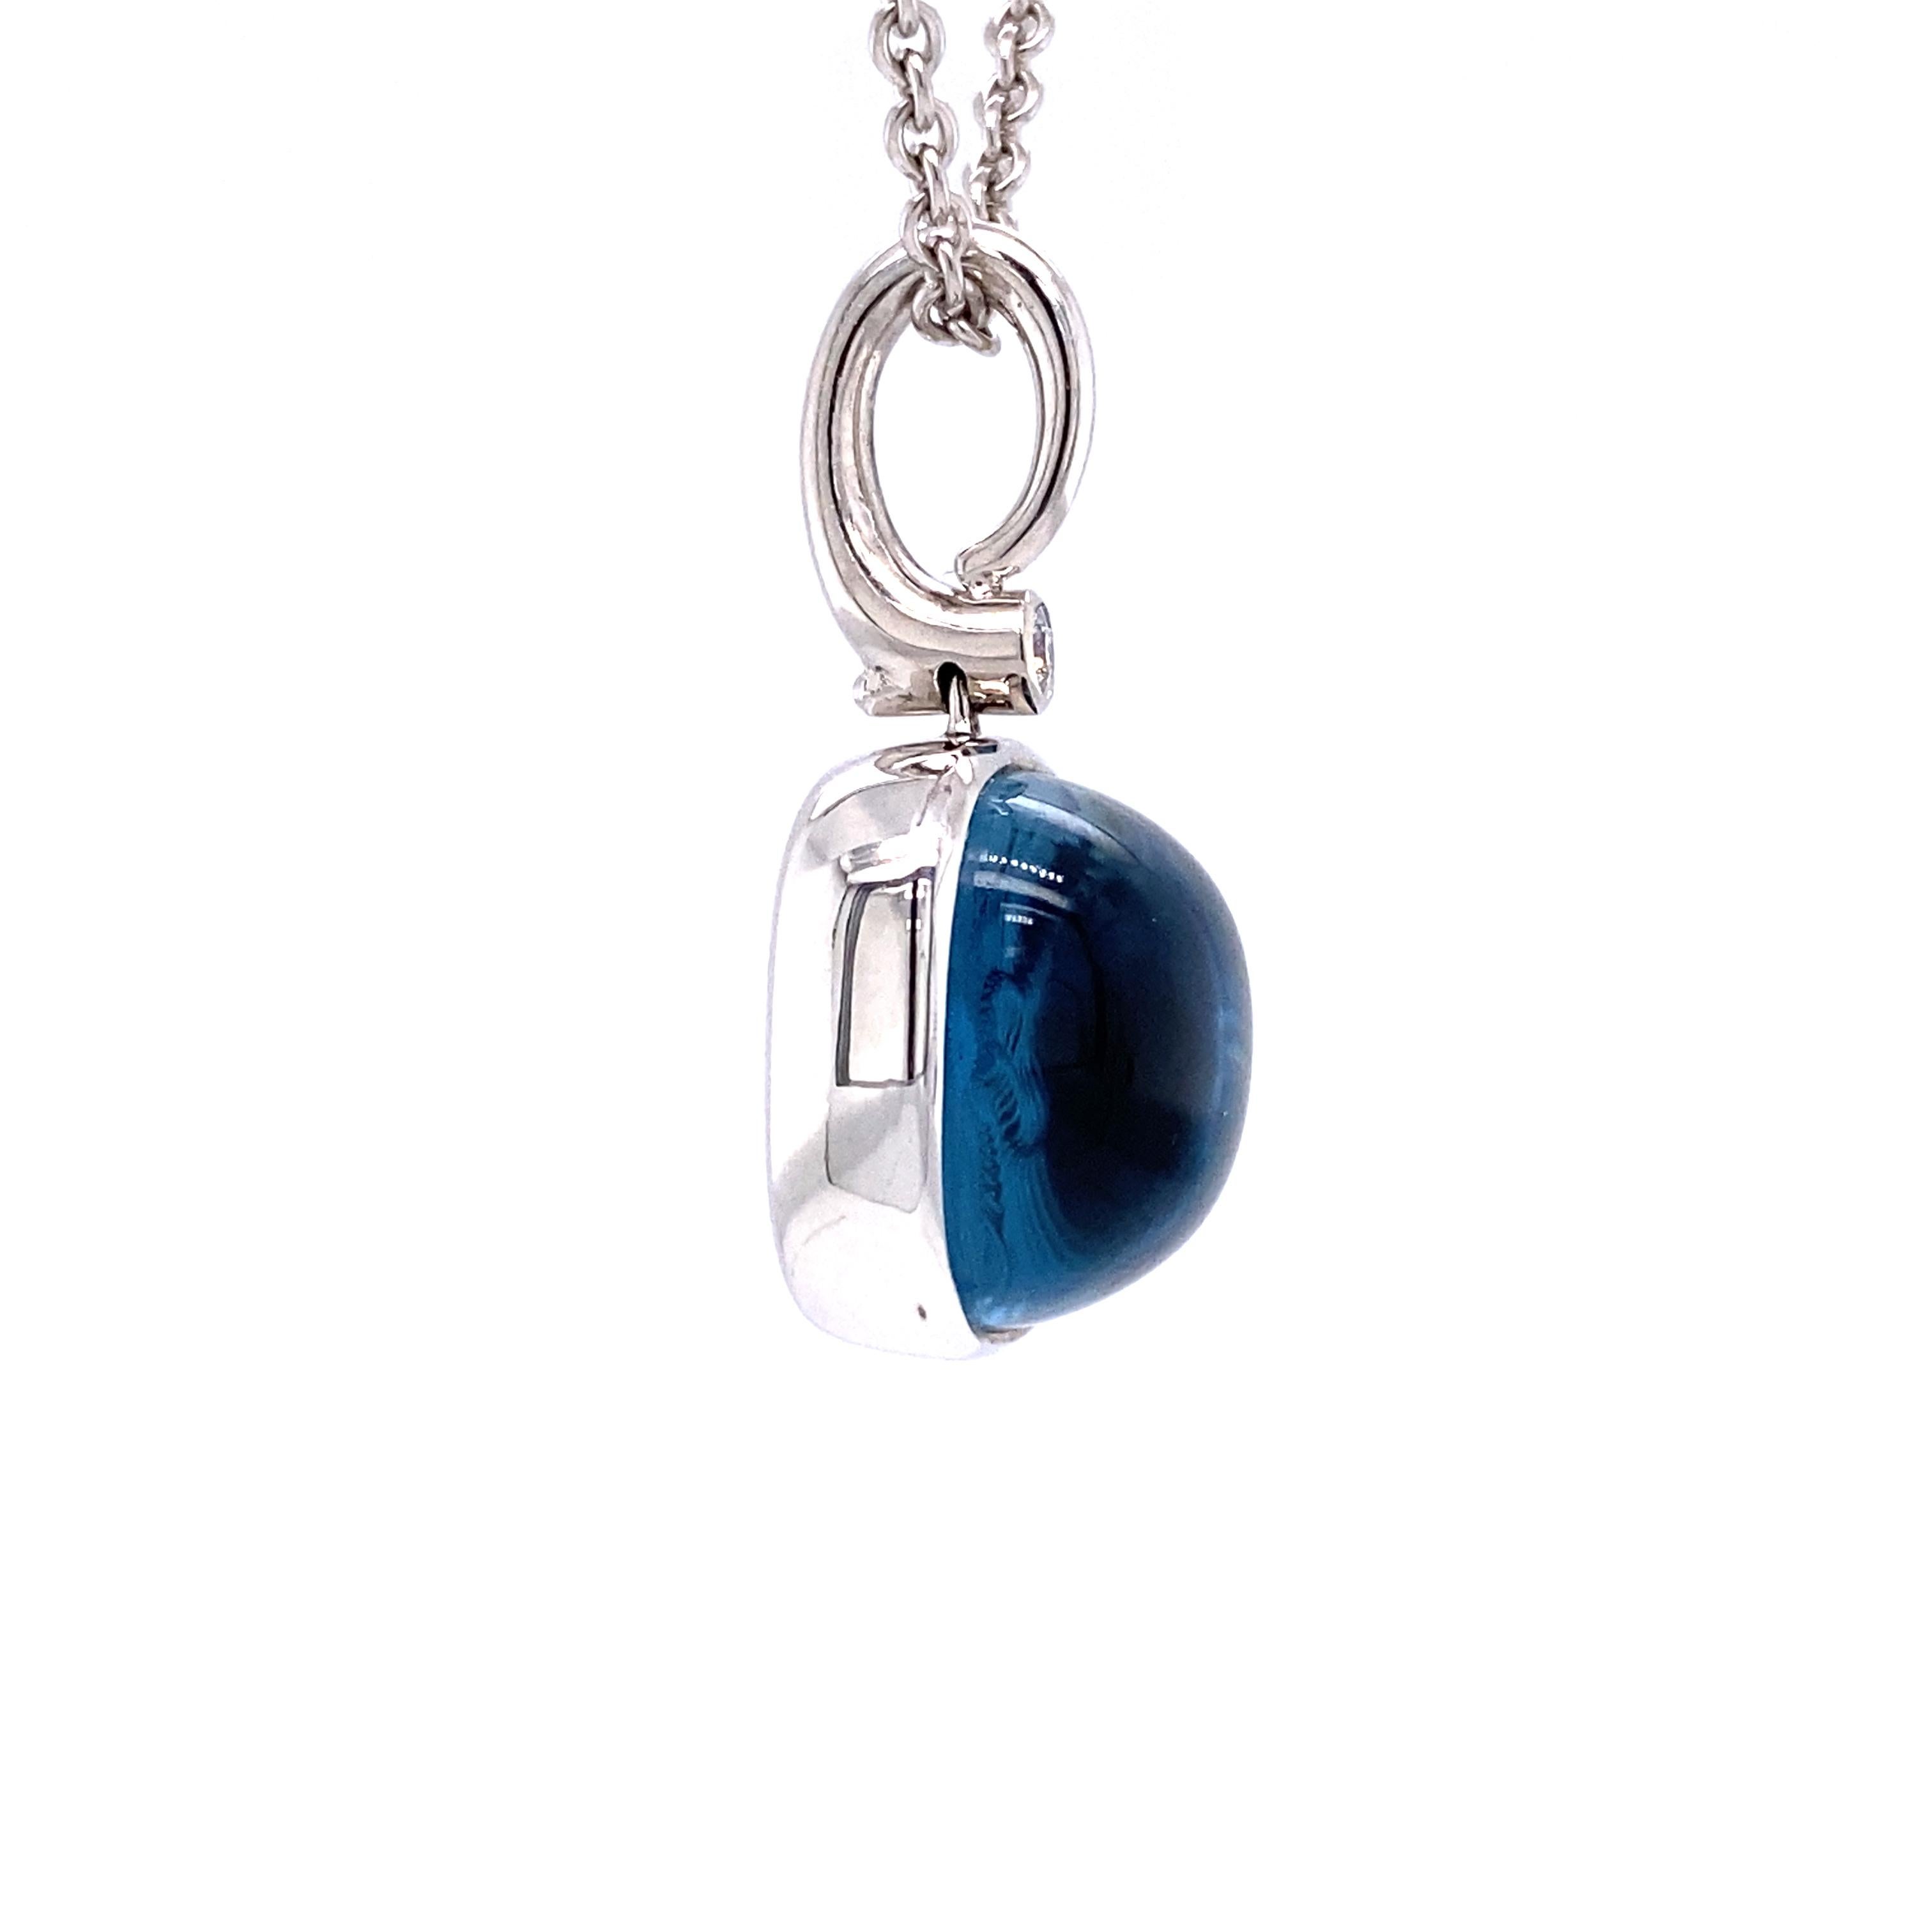 Contemporary Square Pendant Necklace 18k White Gold  Diamond 0.04 ct Blue Topaz  Guilloche For Sale